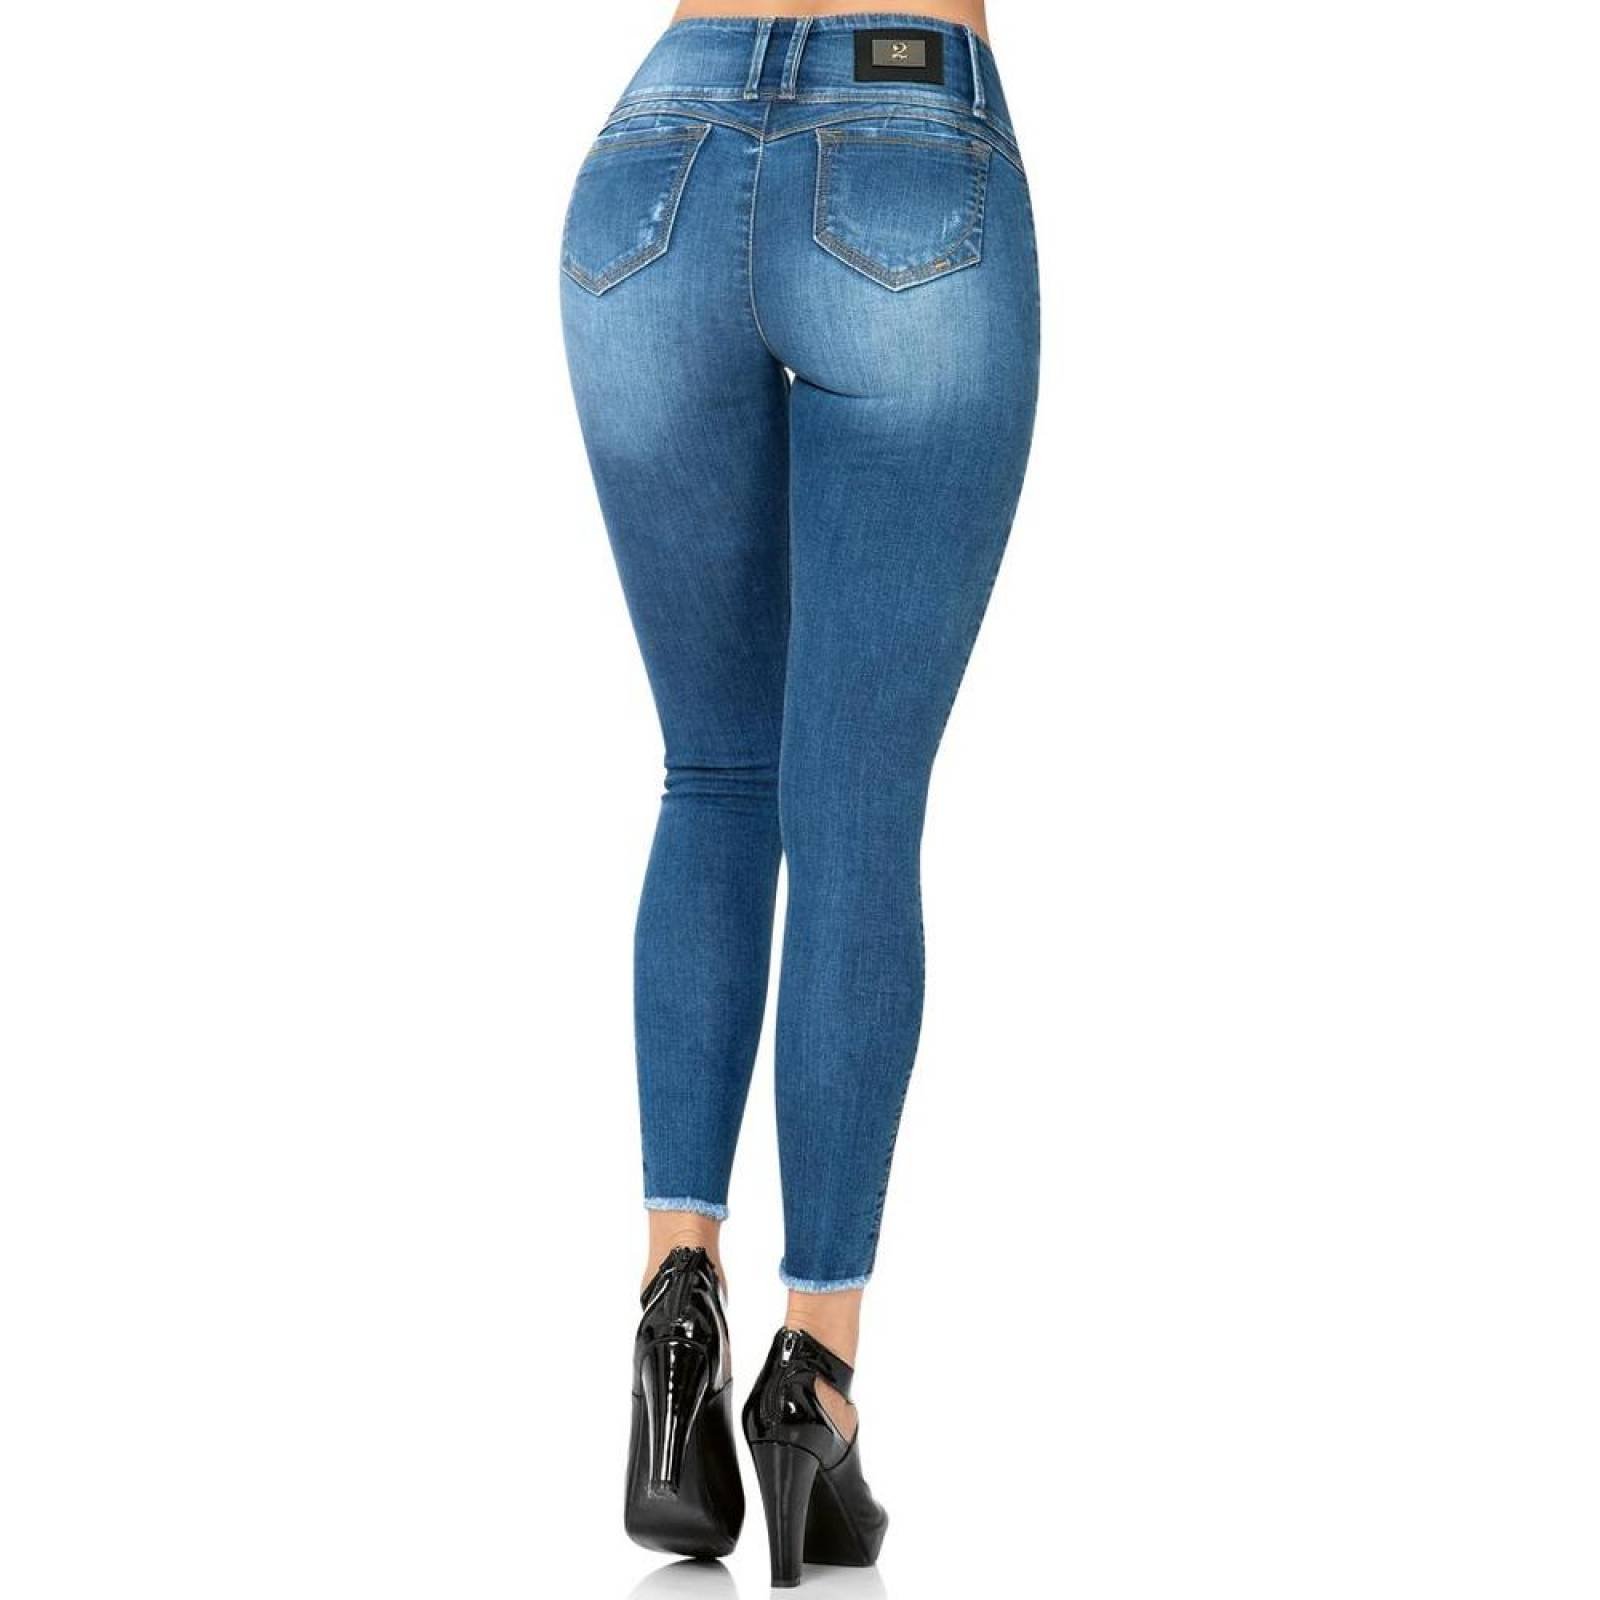 Jeans Moda Mujer Salvaje Tentación Stone 71803311 Mezclilla Stretch 